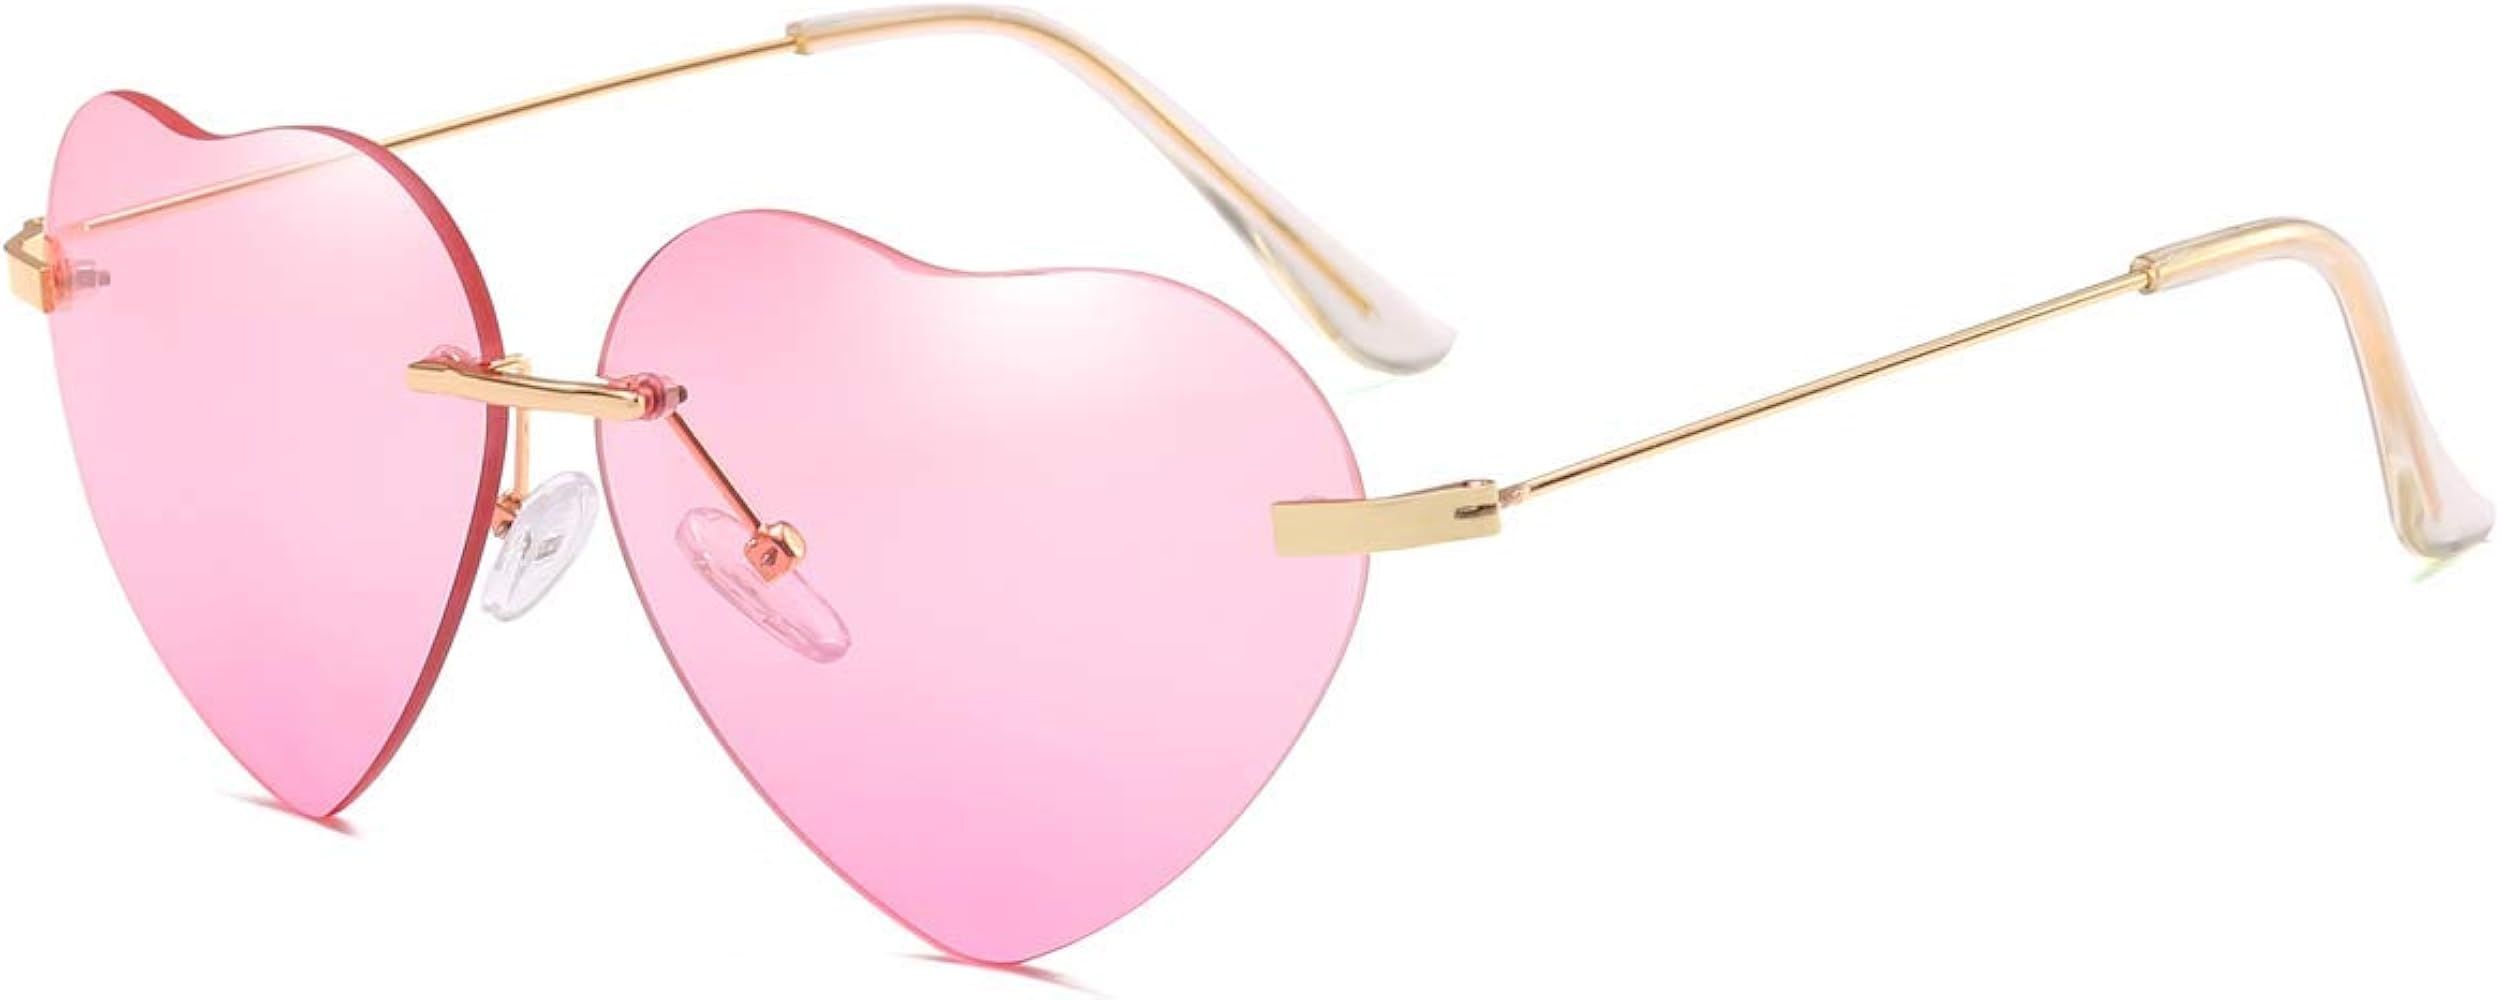 Dollger Heart Sunglasses Thin Metal Frame Lovely Heart Style for Women | Amazon (US)